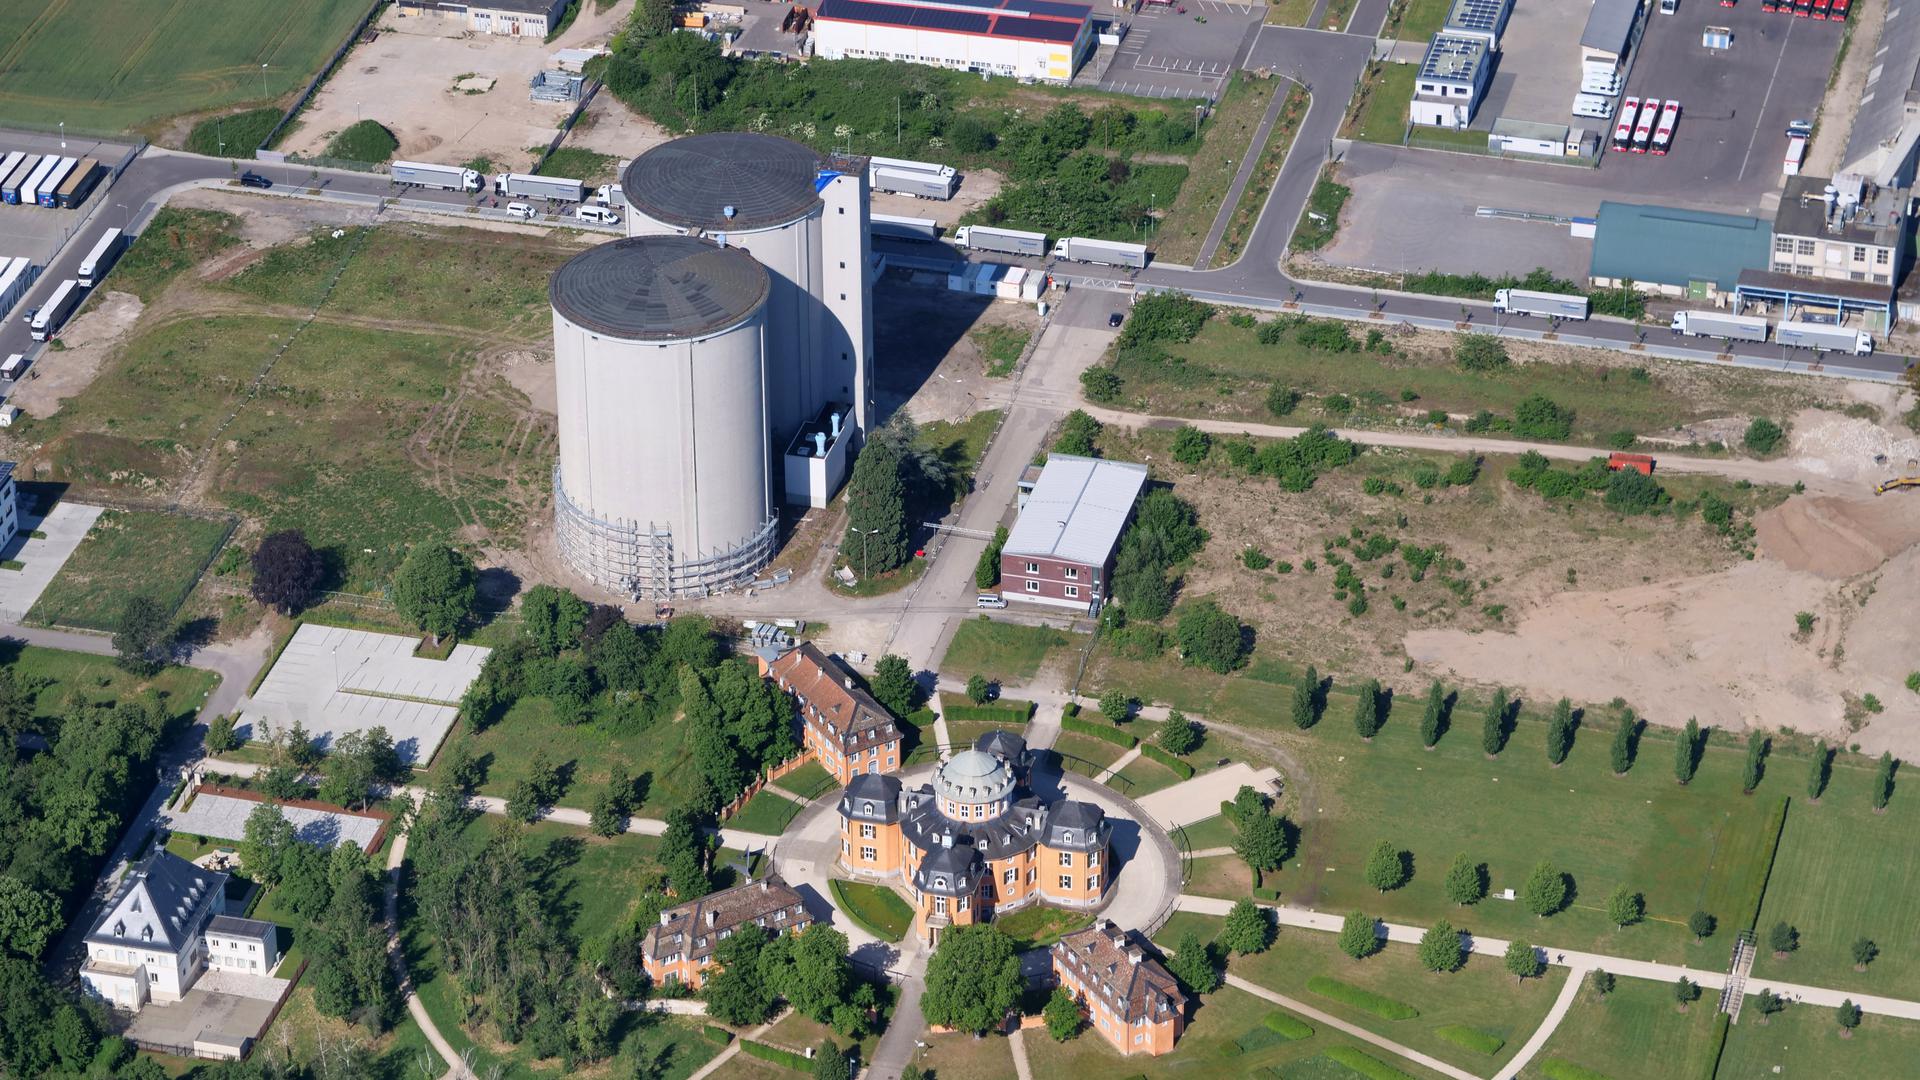 Waghaeusel Gelaende der ehemaligen Zuckerfabrik mit den Silos und der Eremitage
Luftbild vom 16.05.2020
Peter Sandbiller
Luftbruchsal